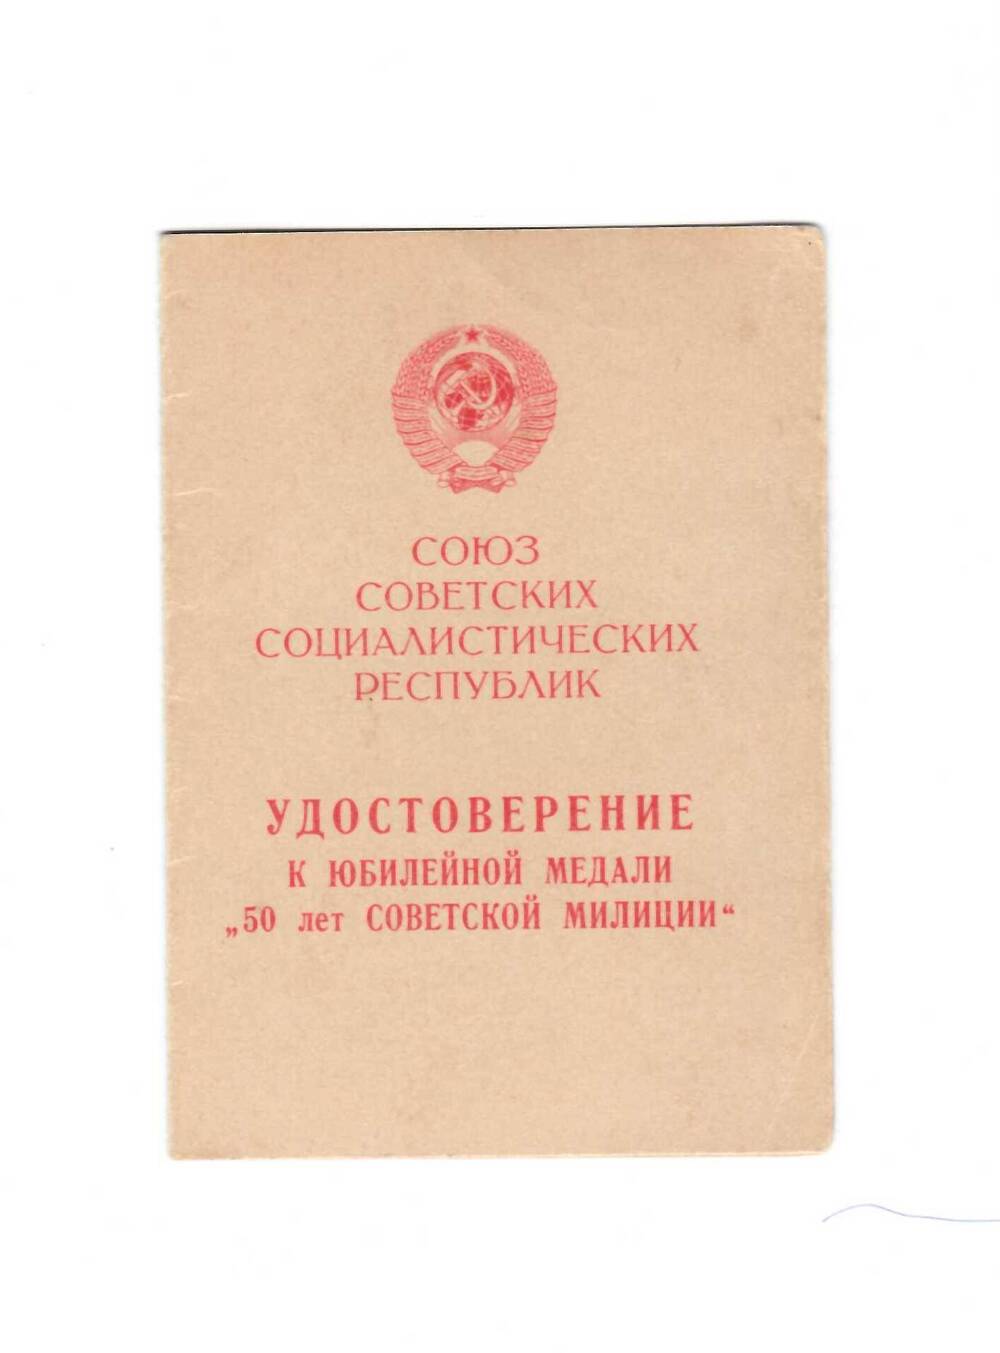 Удостоверение к юбилейной медали 50 лет Советской милиции лейтенанта милиции Павлюченко Михаила Петровича, от 22 апреля 1968 года.